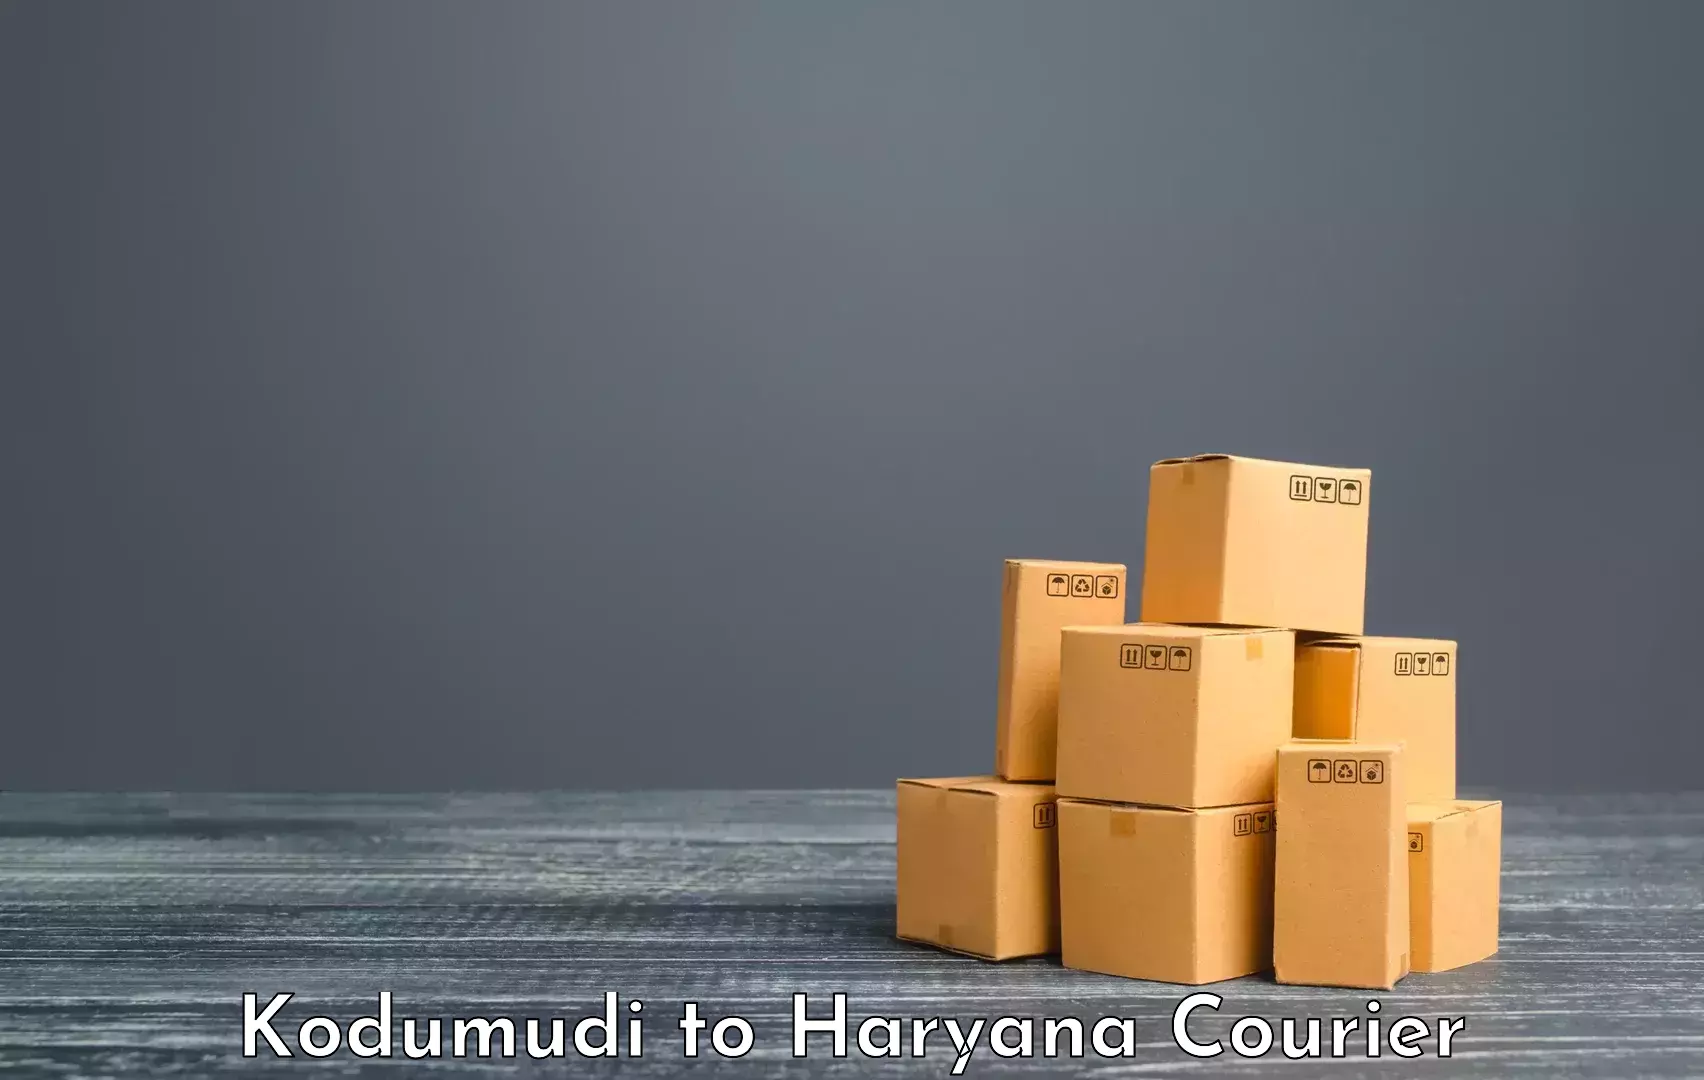 Urban luggage shipping in Kodumudi to NCR Haryana